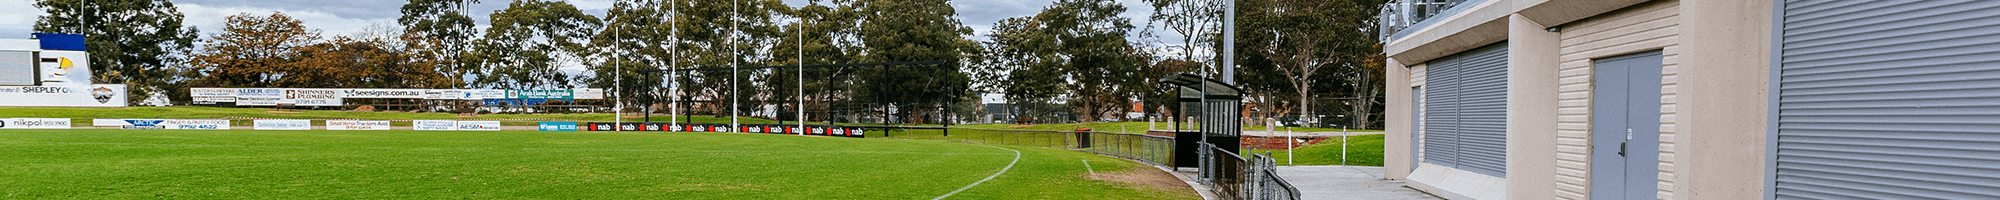 AFL field and pavillion